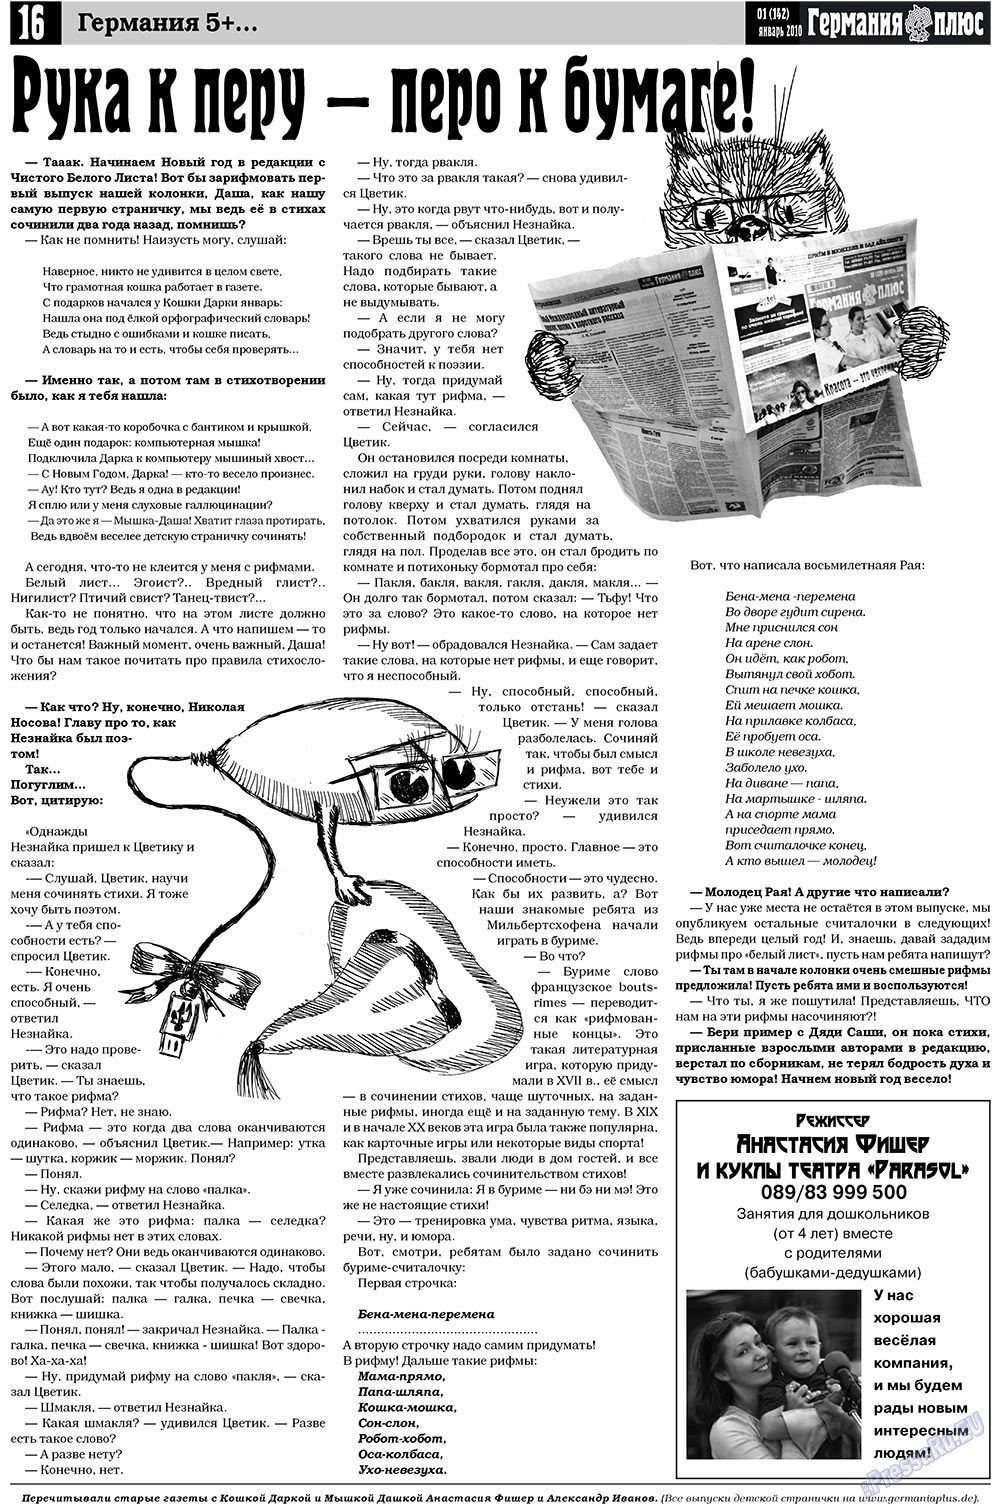 Германия плюс (газета). 2010 год, номер 1, стр. 16